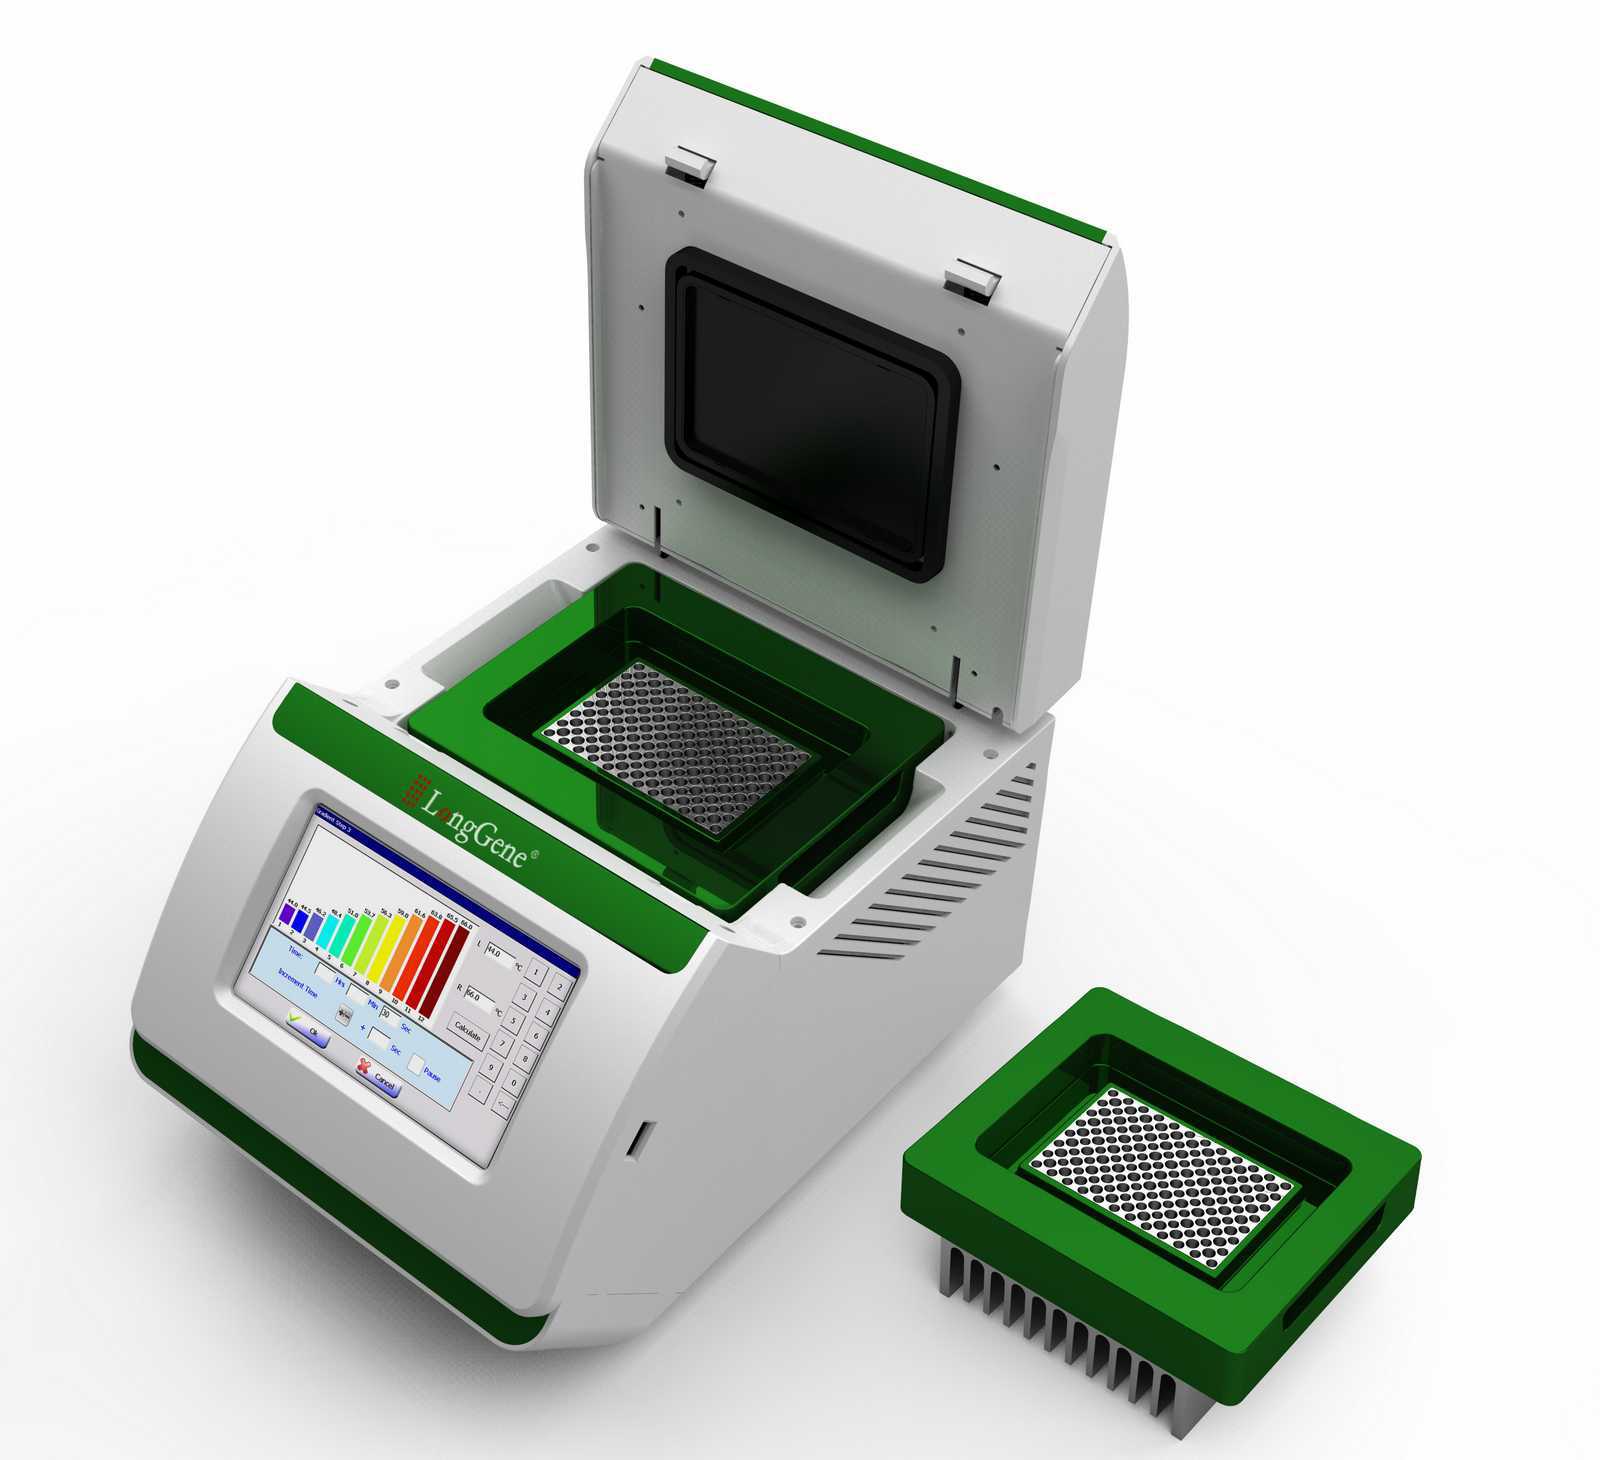 PCR基因扩增仪A300